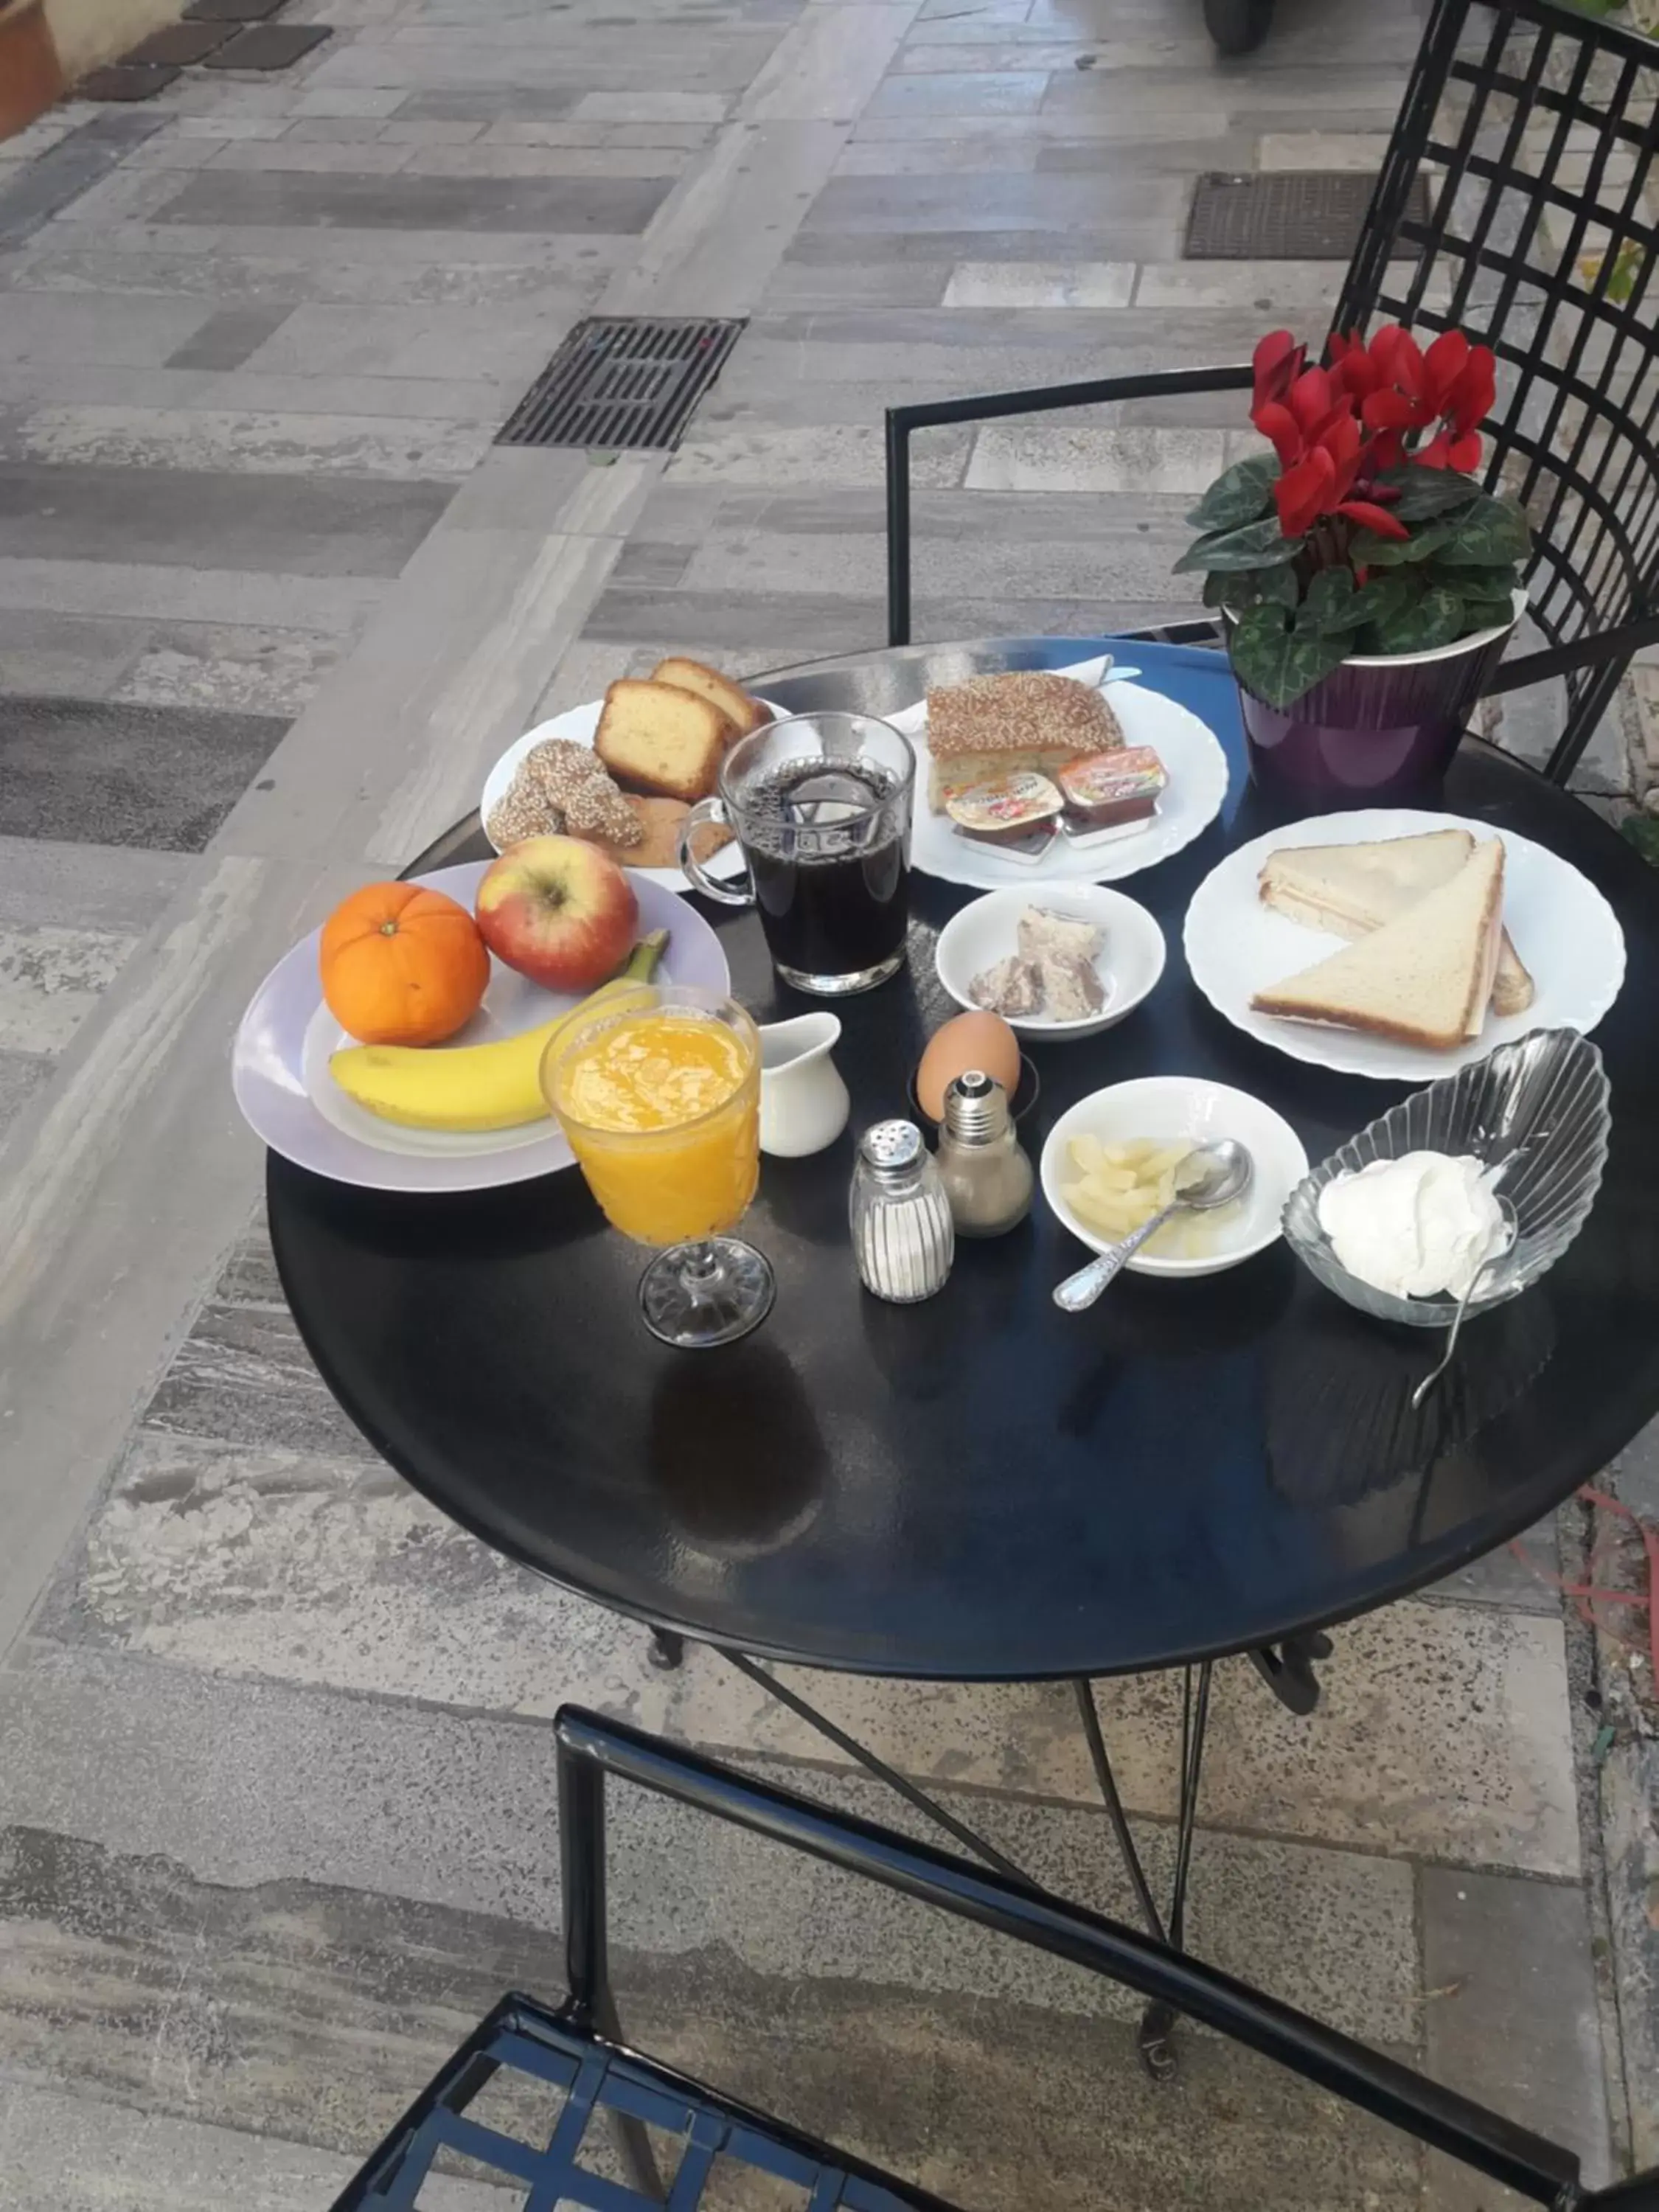 Breakfast in Polyxenia Hotel